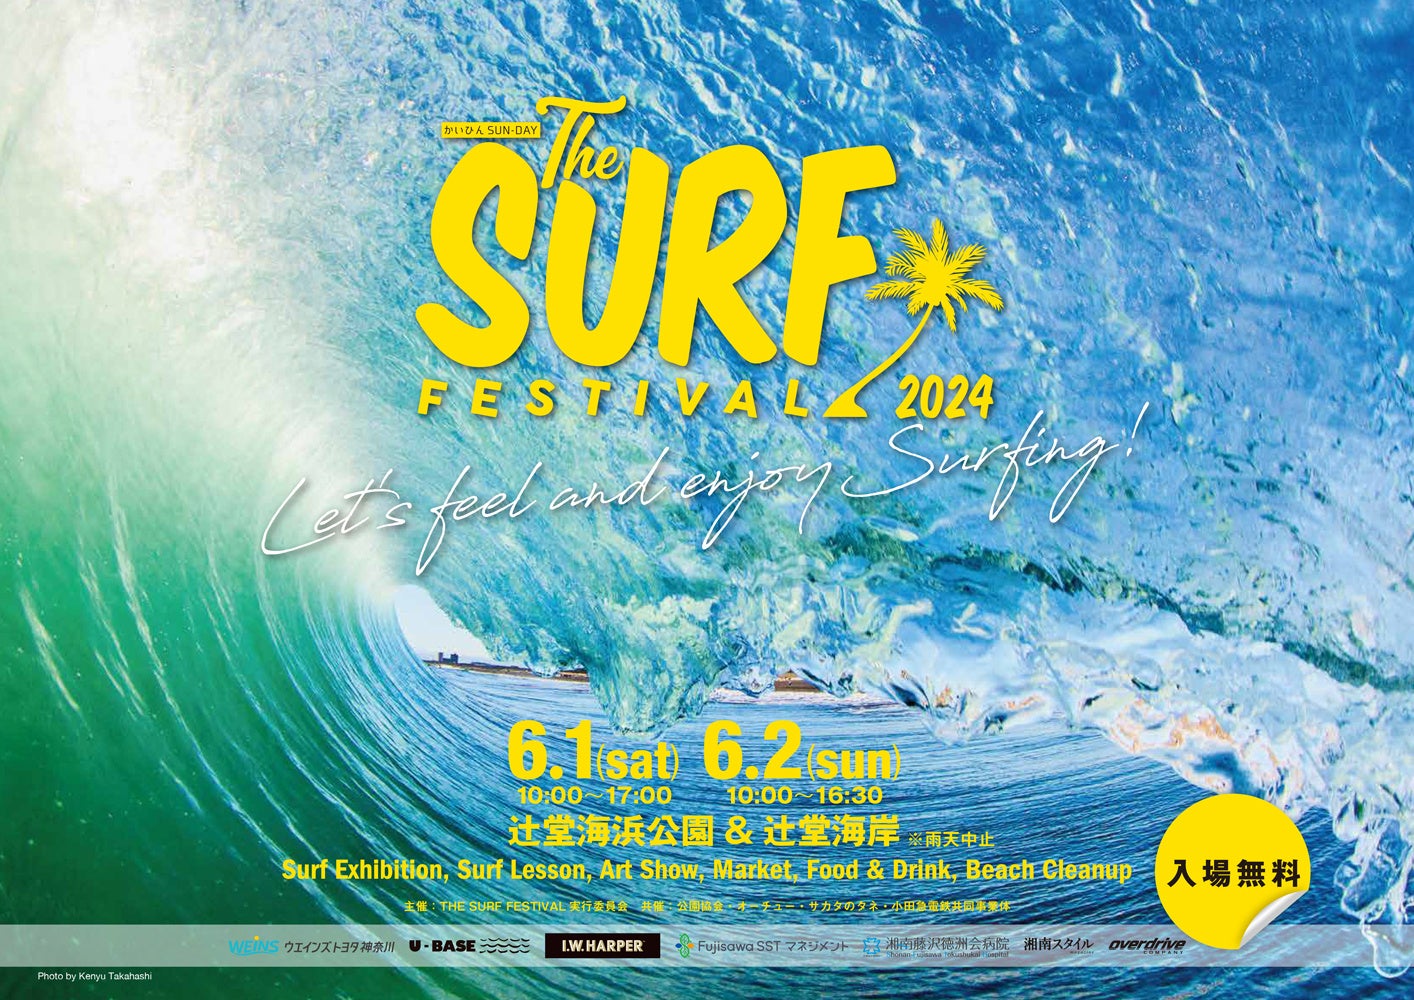 ６月１日（土）＆２日（日）地球と人に優しいオンラインストア「ethicame（エシカミー）」が湘南・辻堂で行われる海とサーフィンのイベント「THE SURF FESTIVAL 2024」に出店